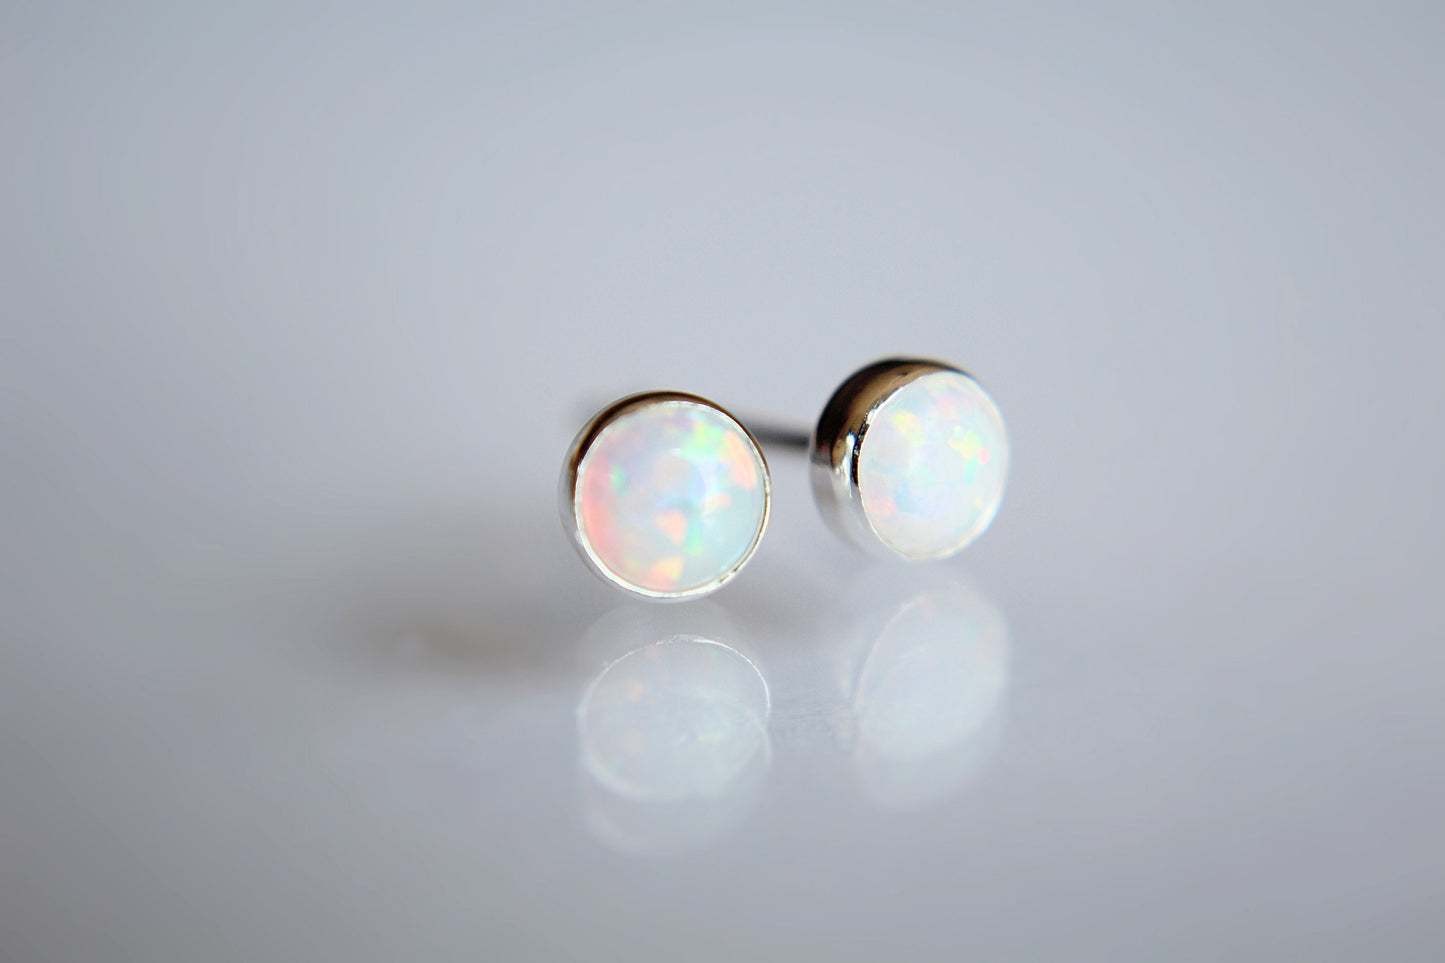 Opal Earrings, Gemstone Earrings, Sterling Earrings, Post Earrings, Opal Post Earrings, Small Opal Earrings, Minimalist Earrings, Gift